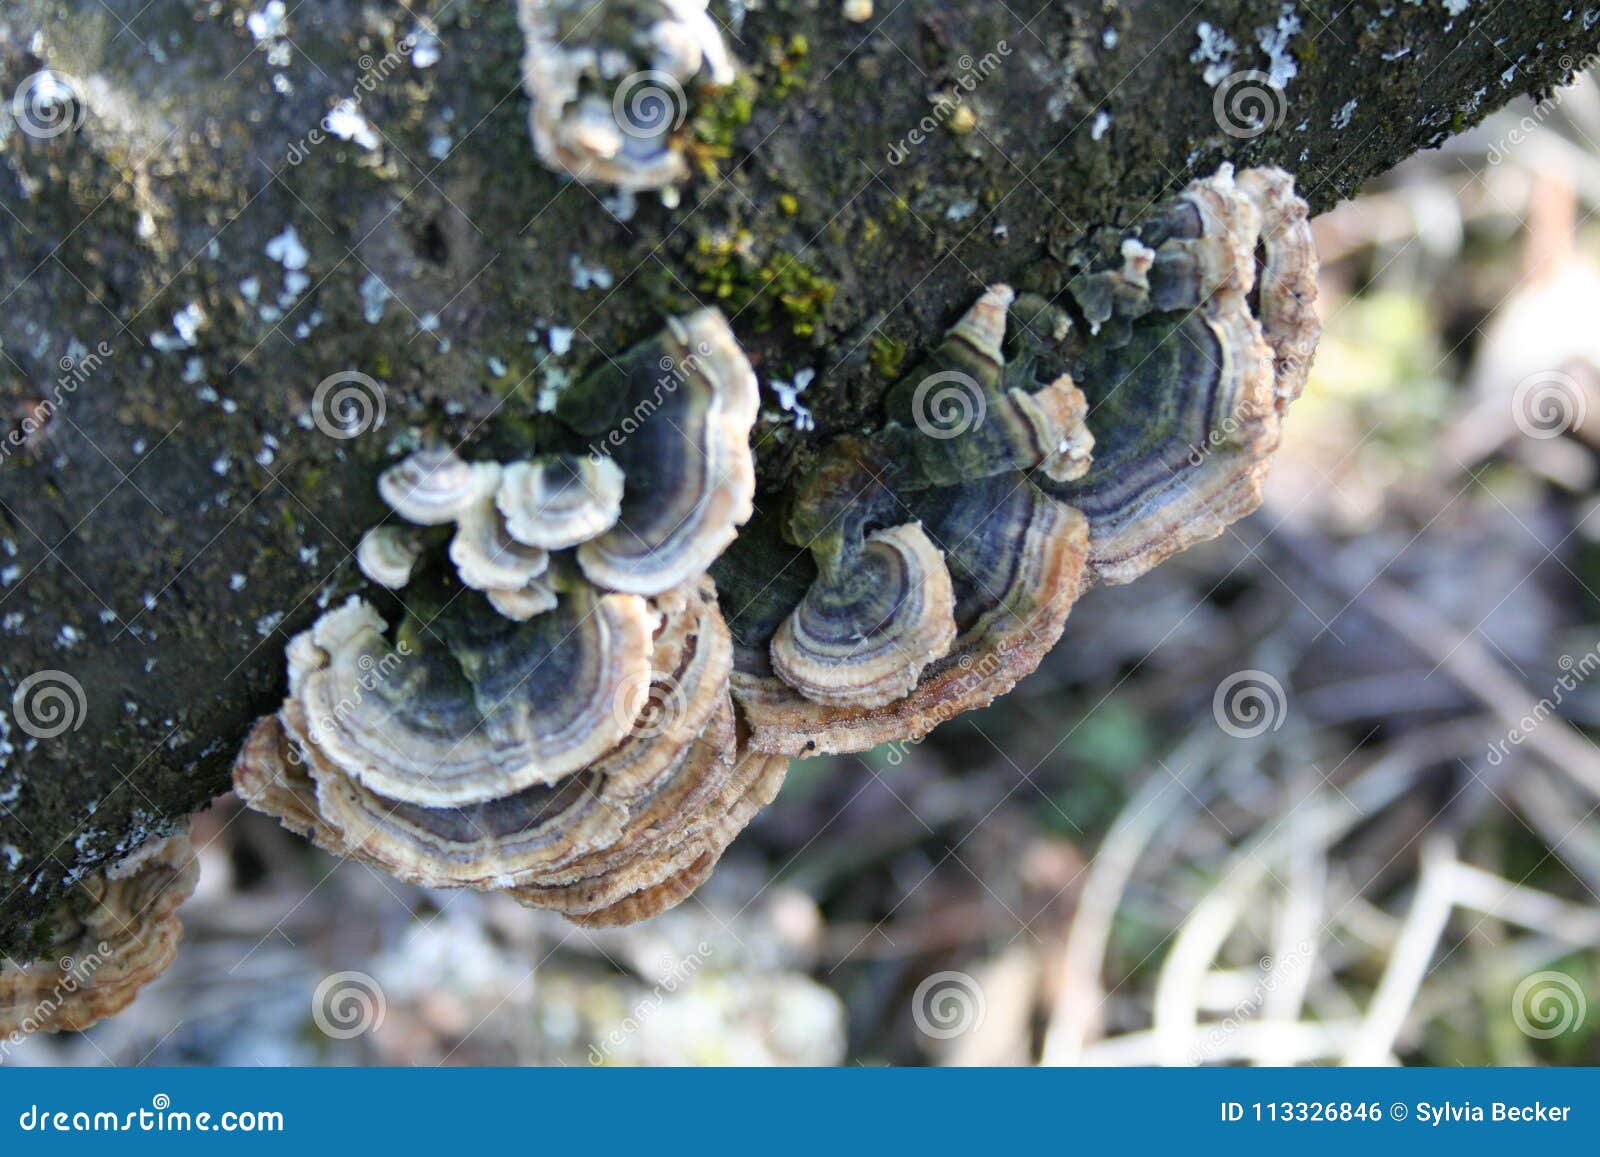 mushrooms on a treetrunk